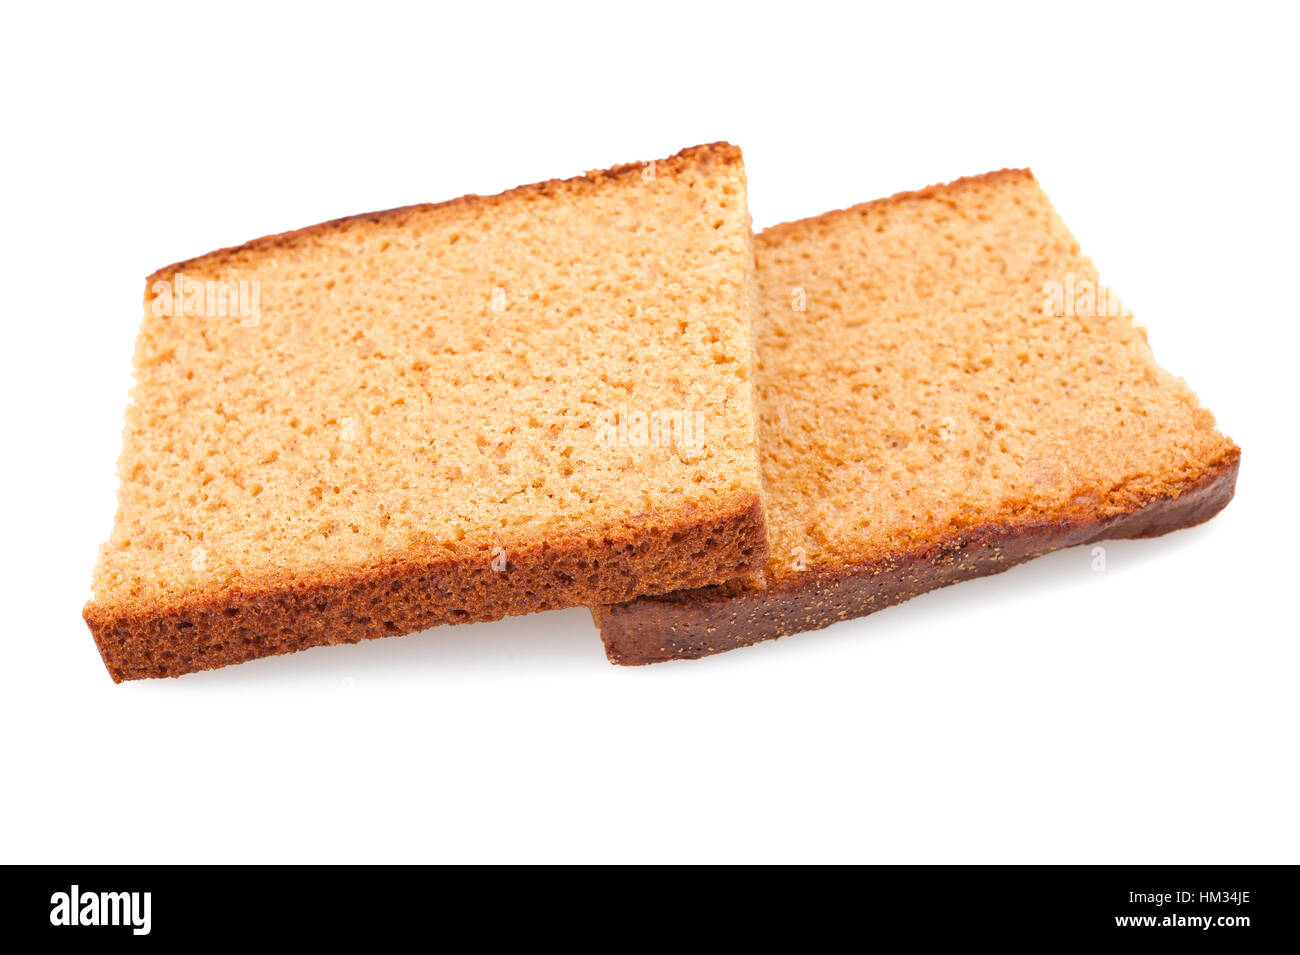 Honey cake slice isolated on white Stock Photo